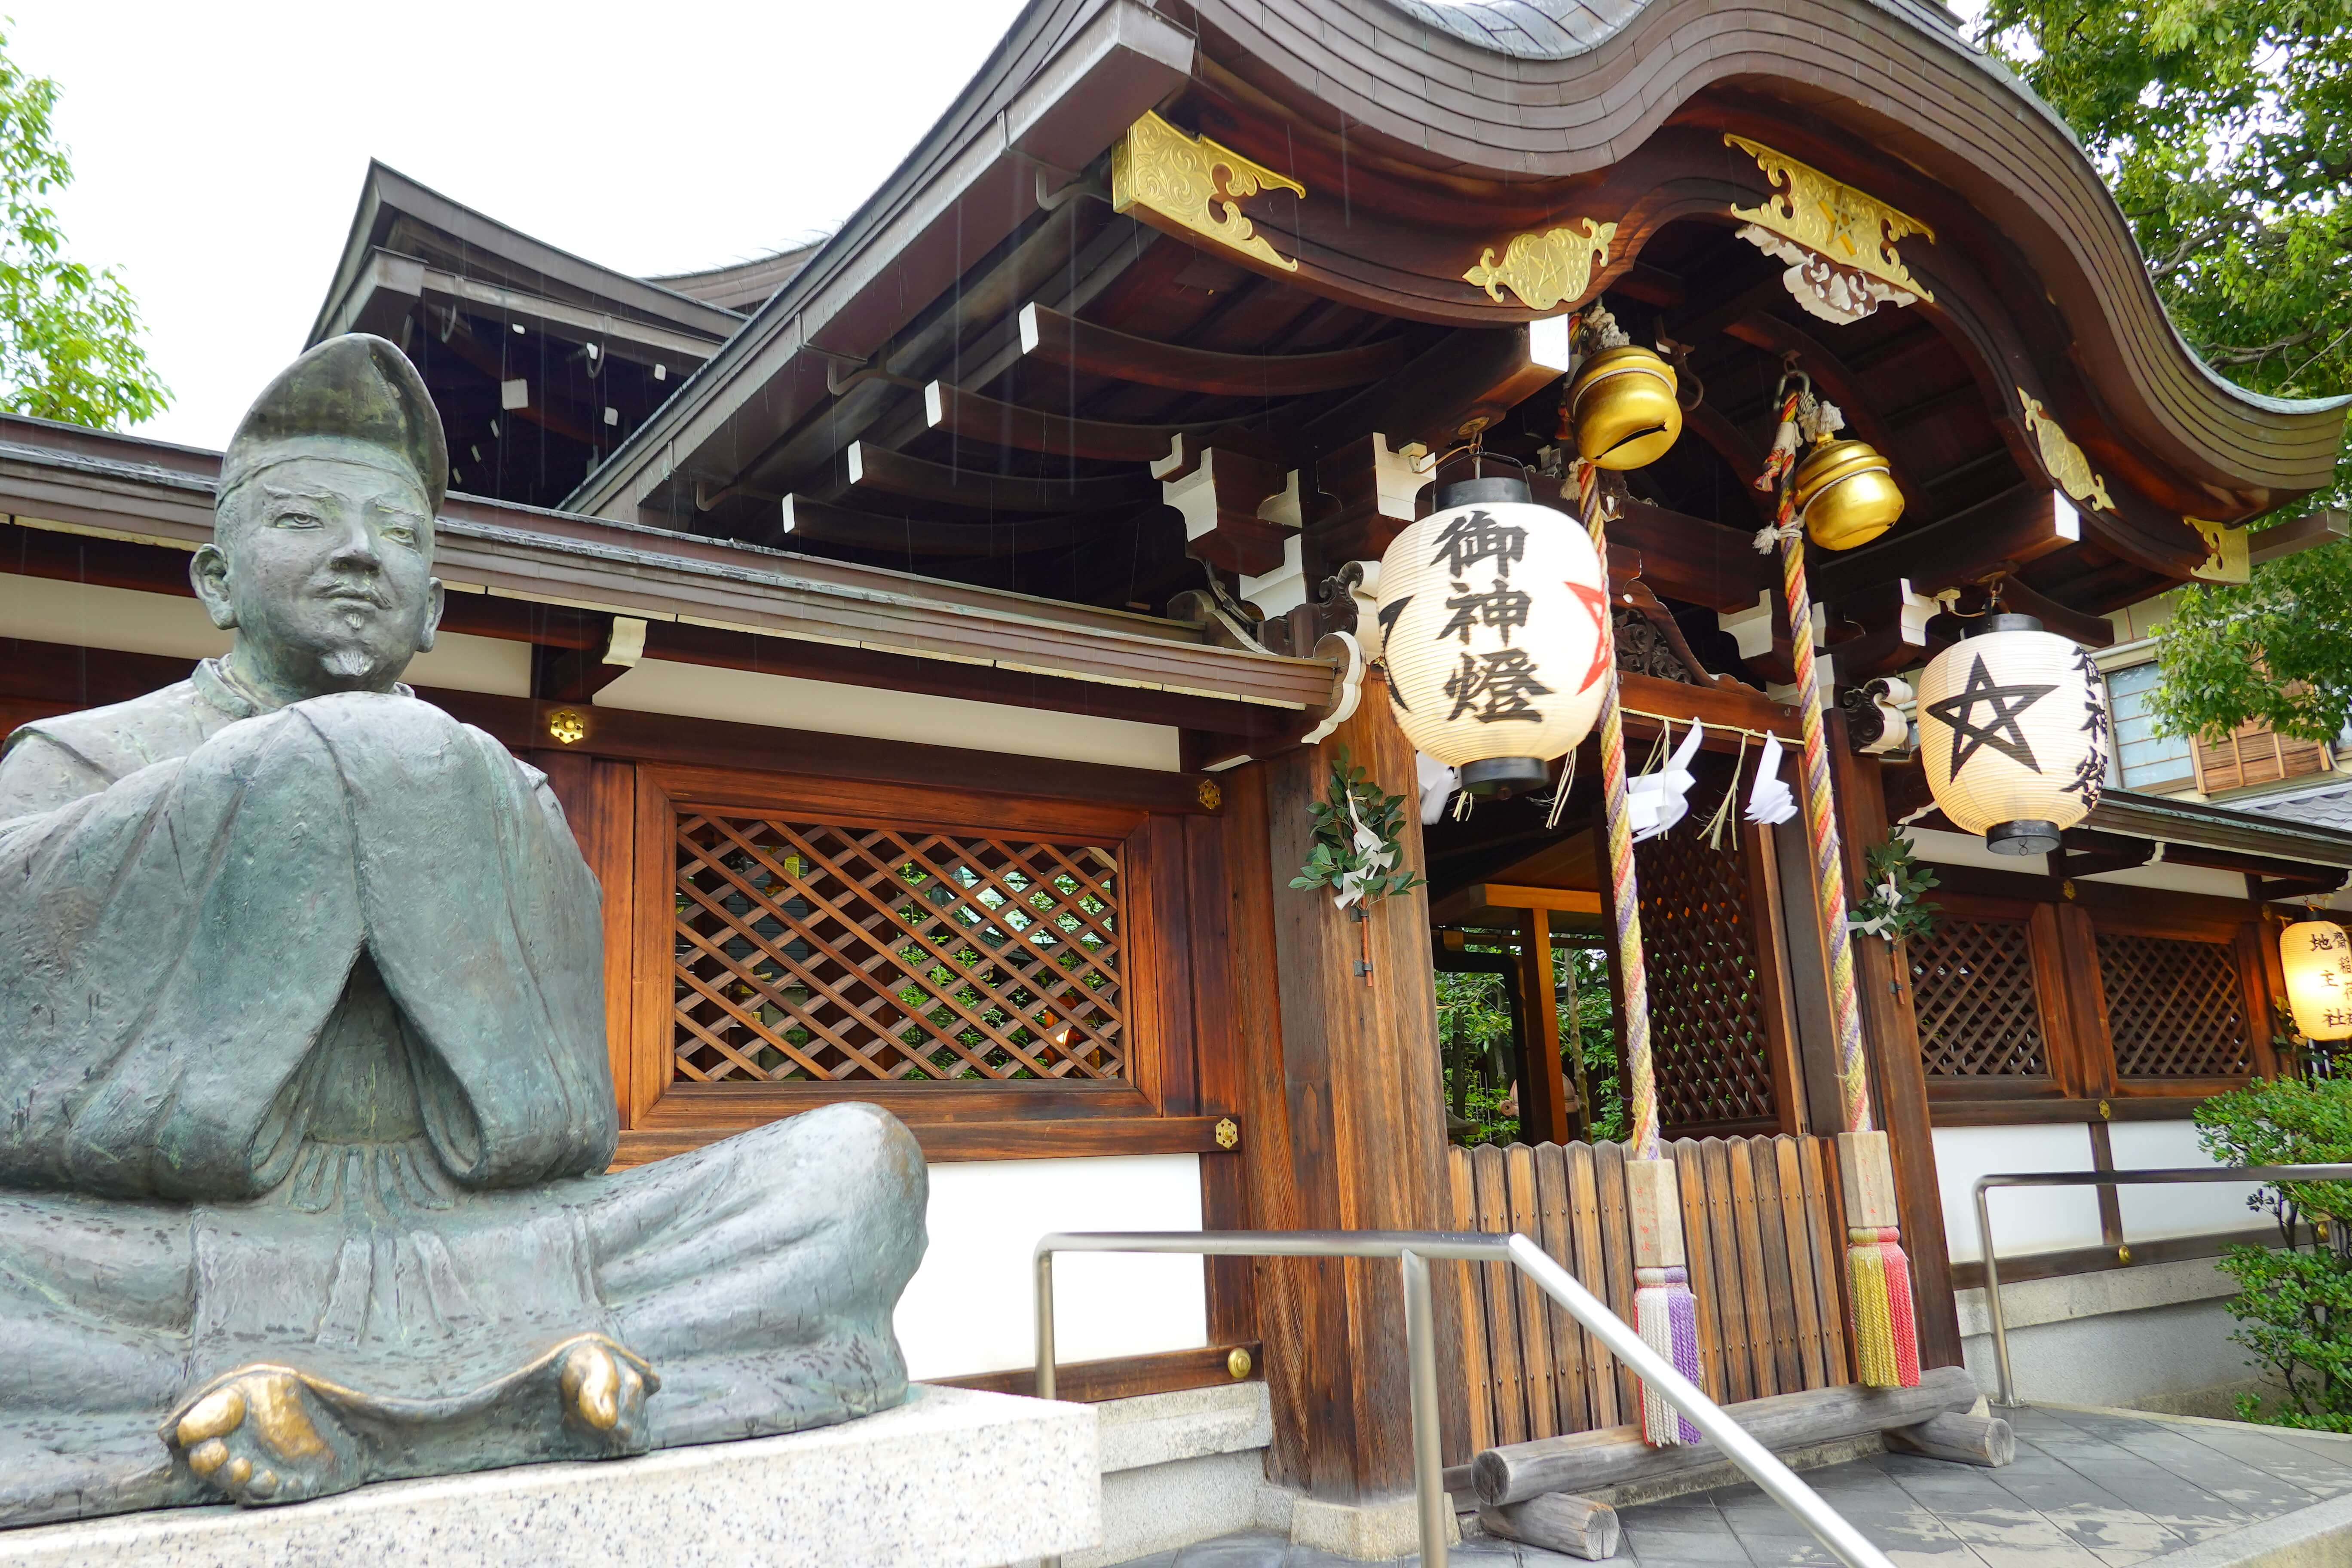 京都 安倍晴明邸宅跡の晴明神社を訪問 陰陽術を身に付けたい Rx100 M7 Lifetime Trip